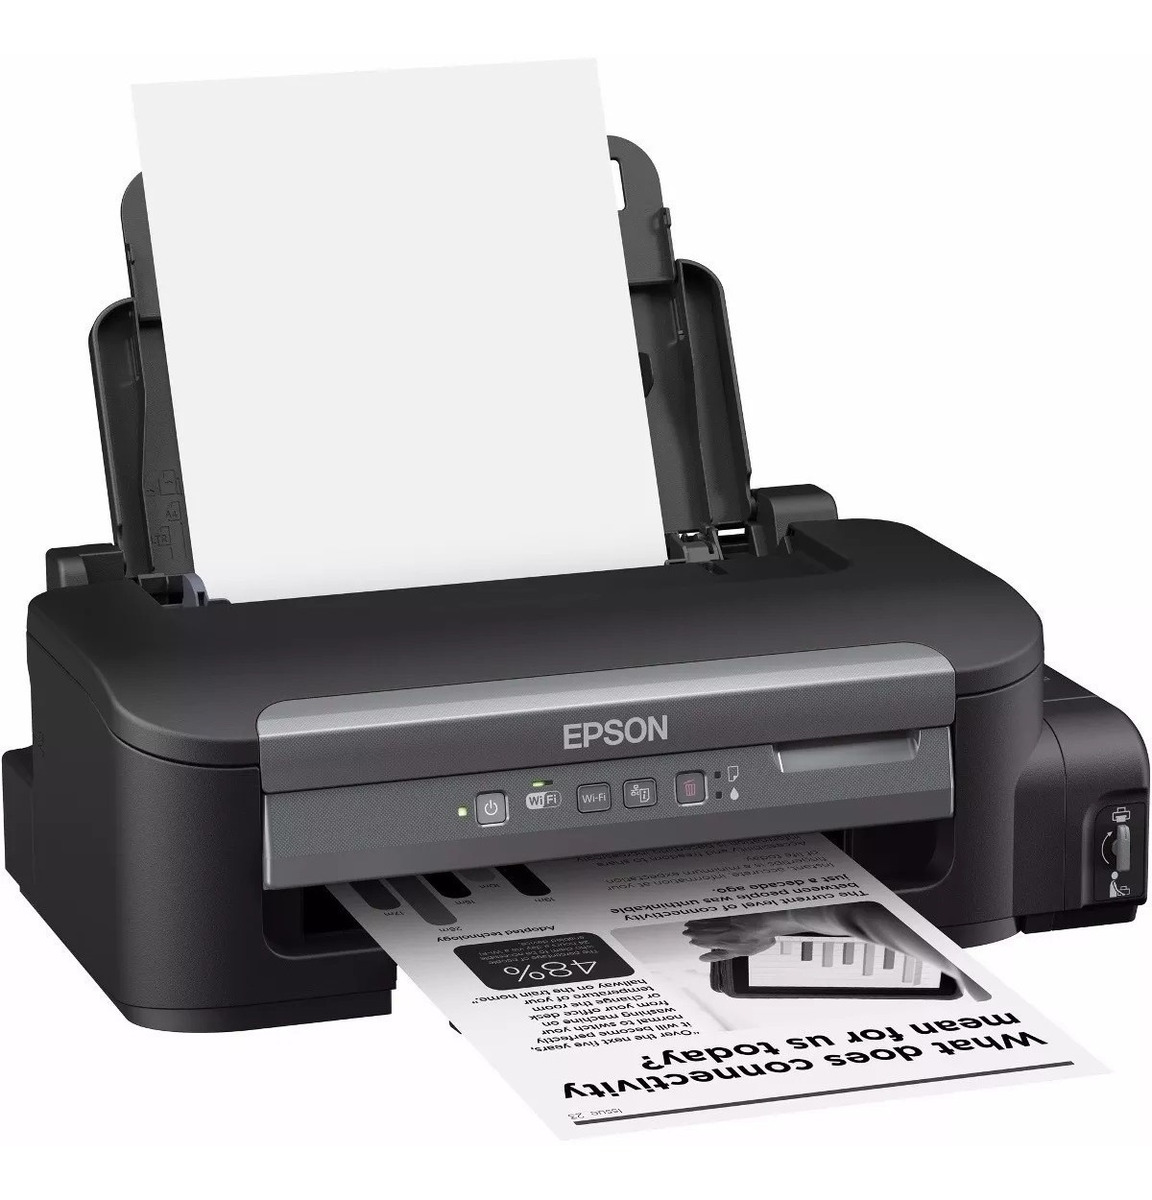 Impresora Epson M105 Monocromática Sistema Continuo Amv Us 29900 En Mercado Libre 0246